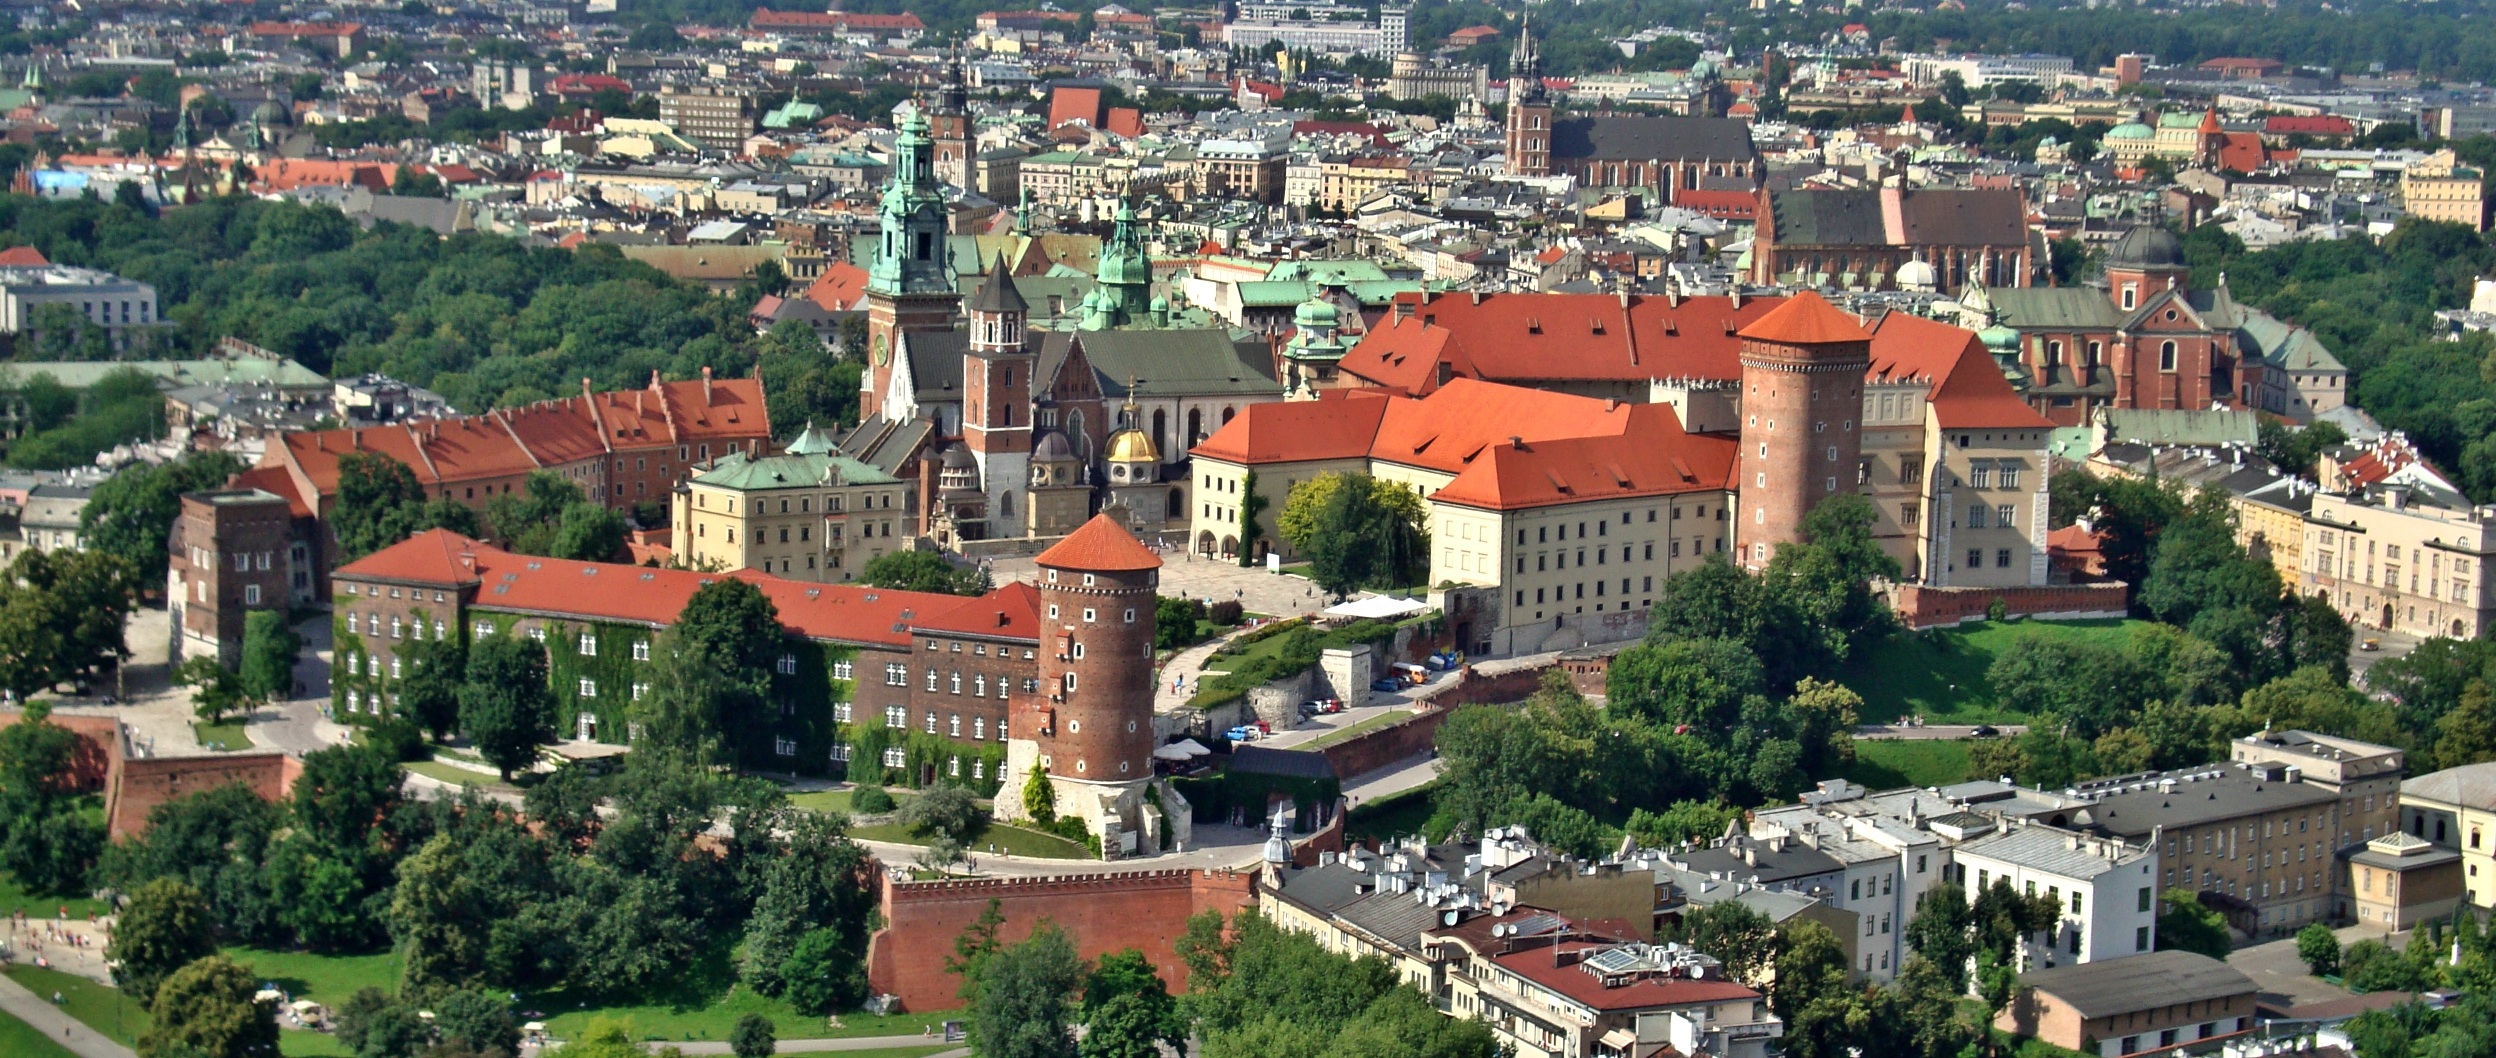 Małopolskie - Wawel